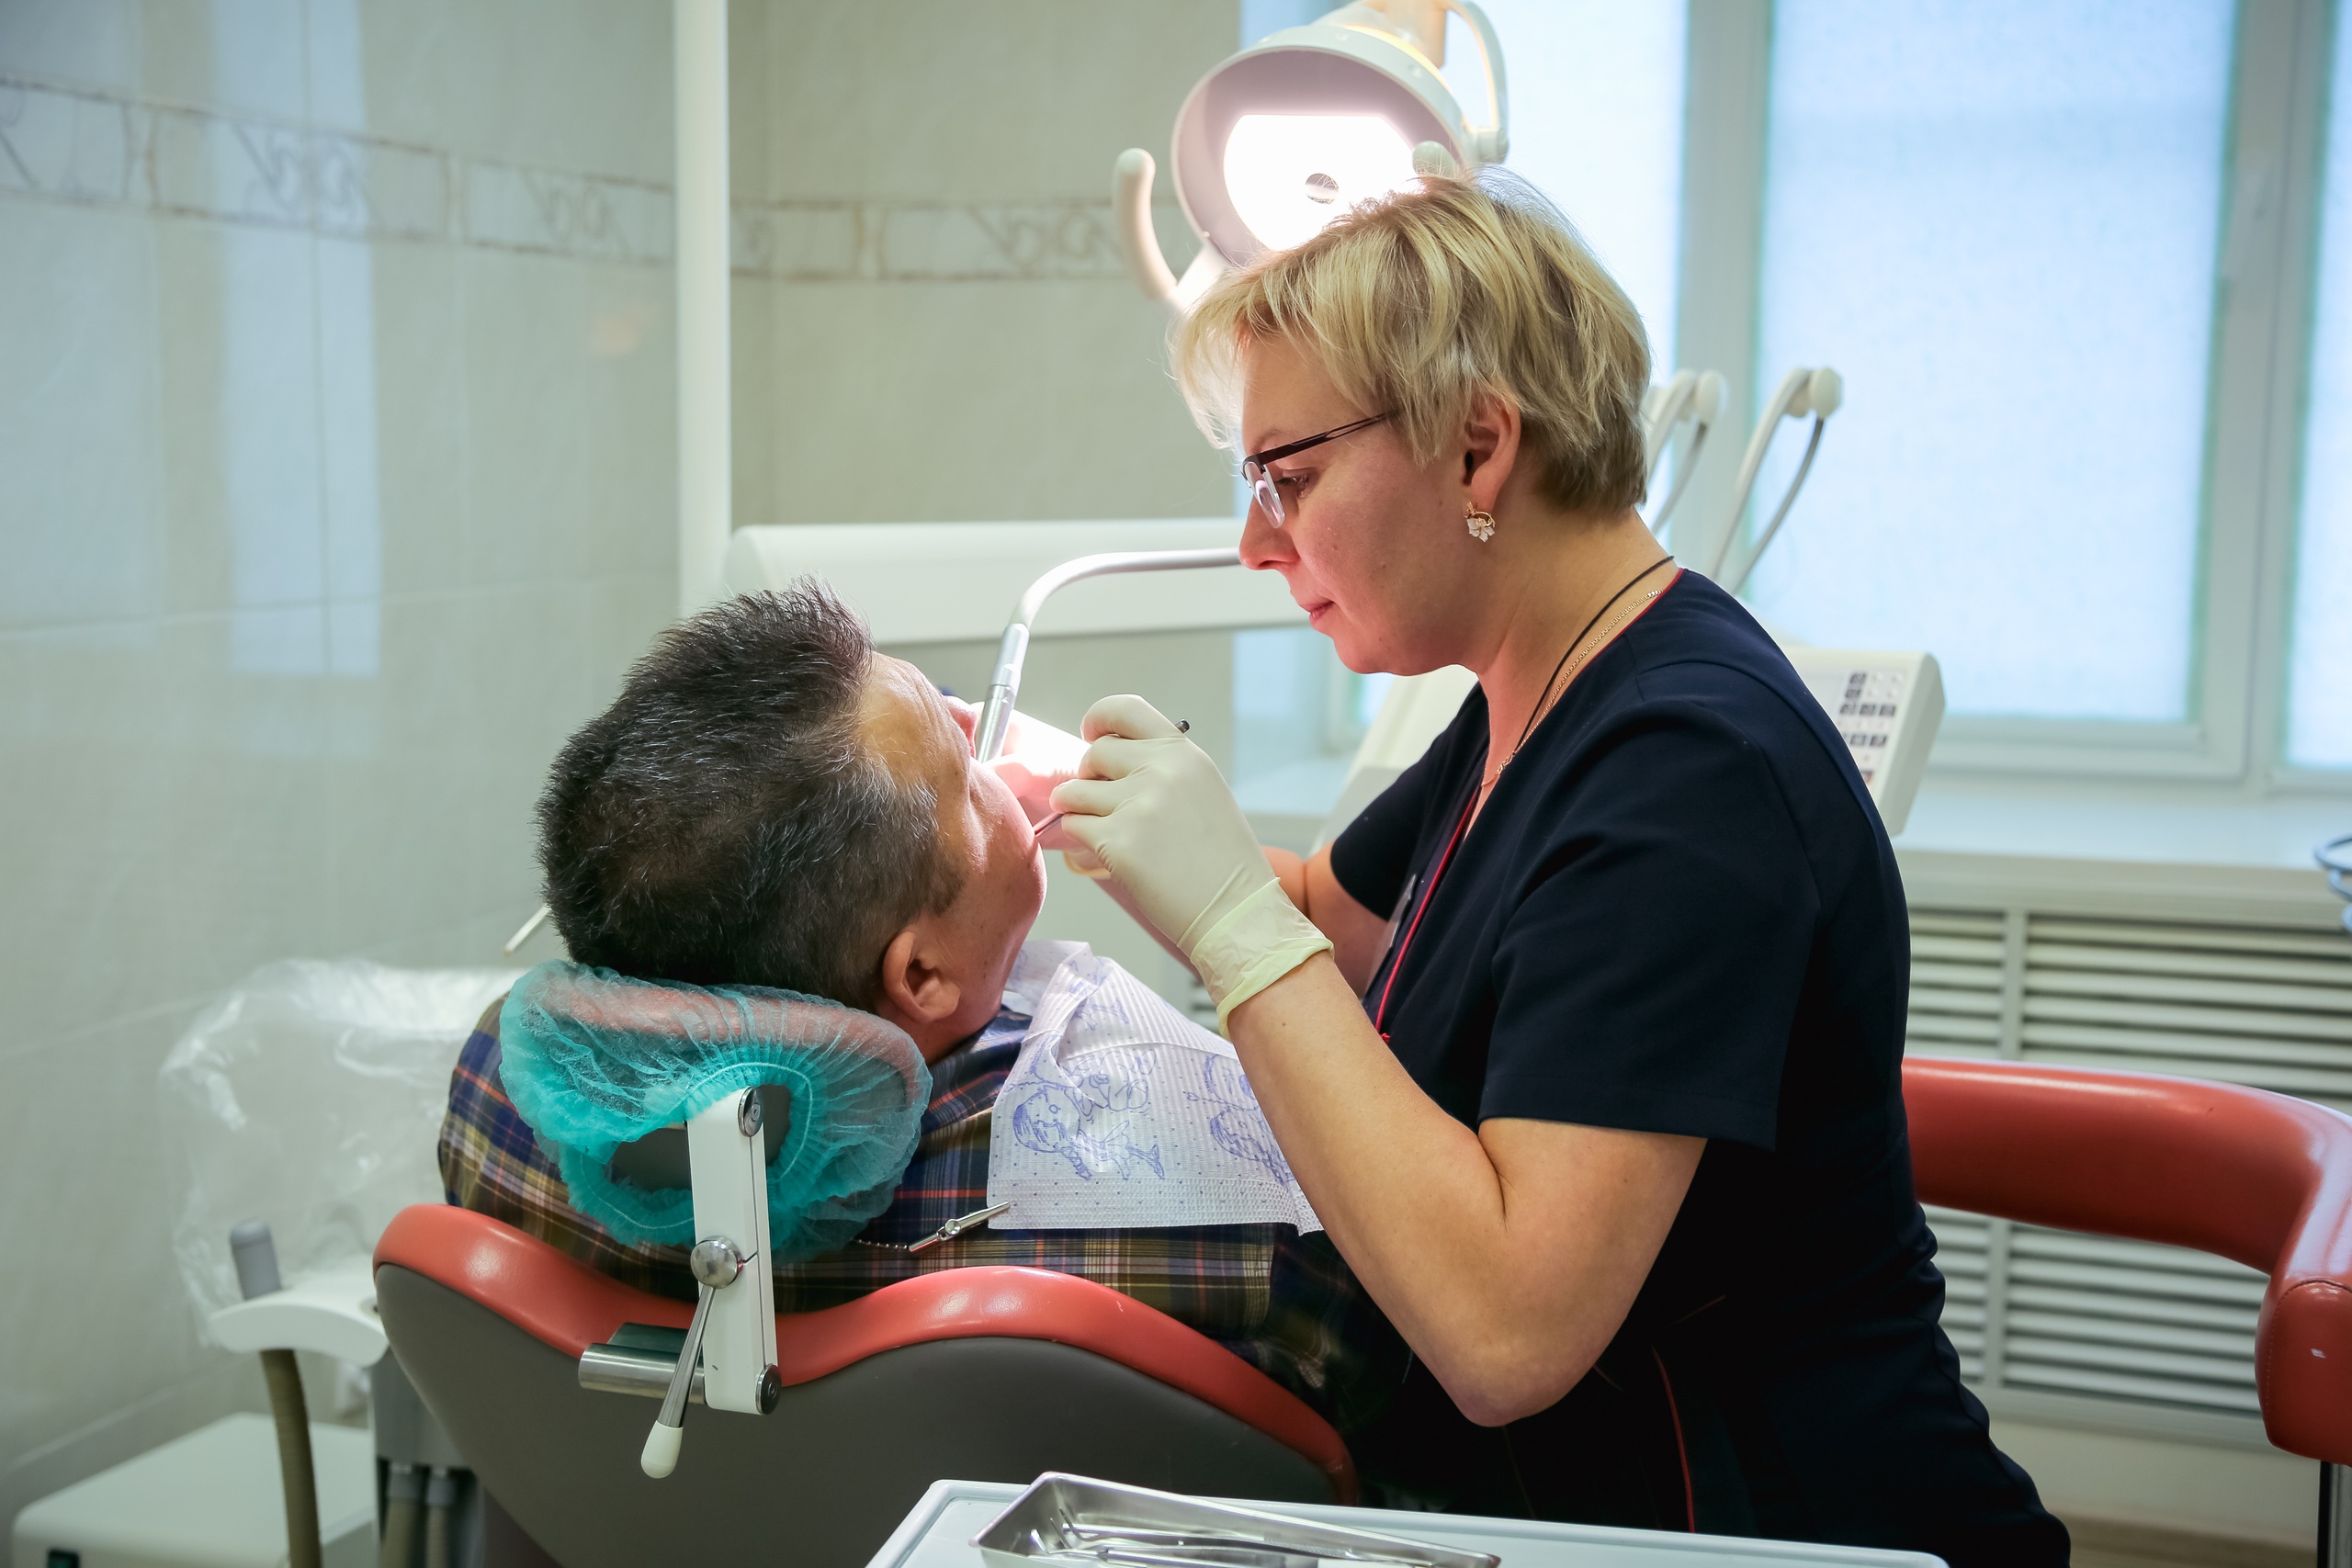 Многие челябинцы лечили зубы в этой стоматологии по полису ОМС, но теперь клиника перешла только на коммерческие отношения